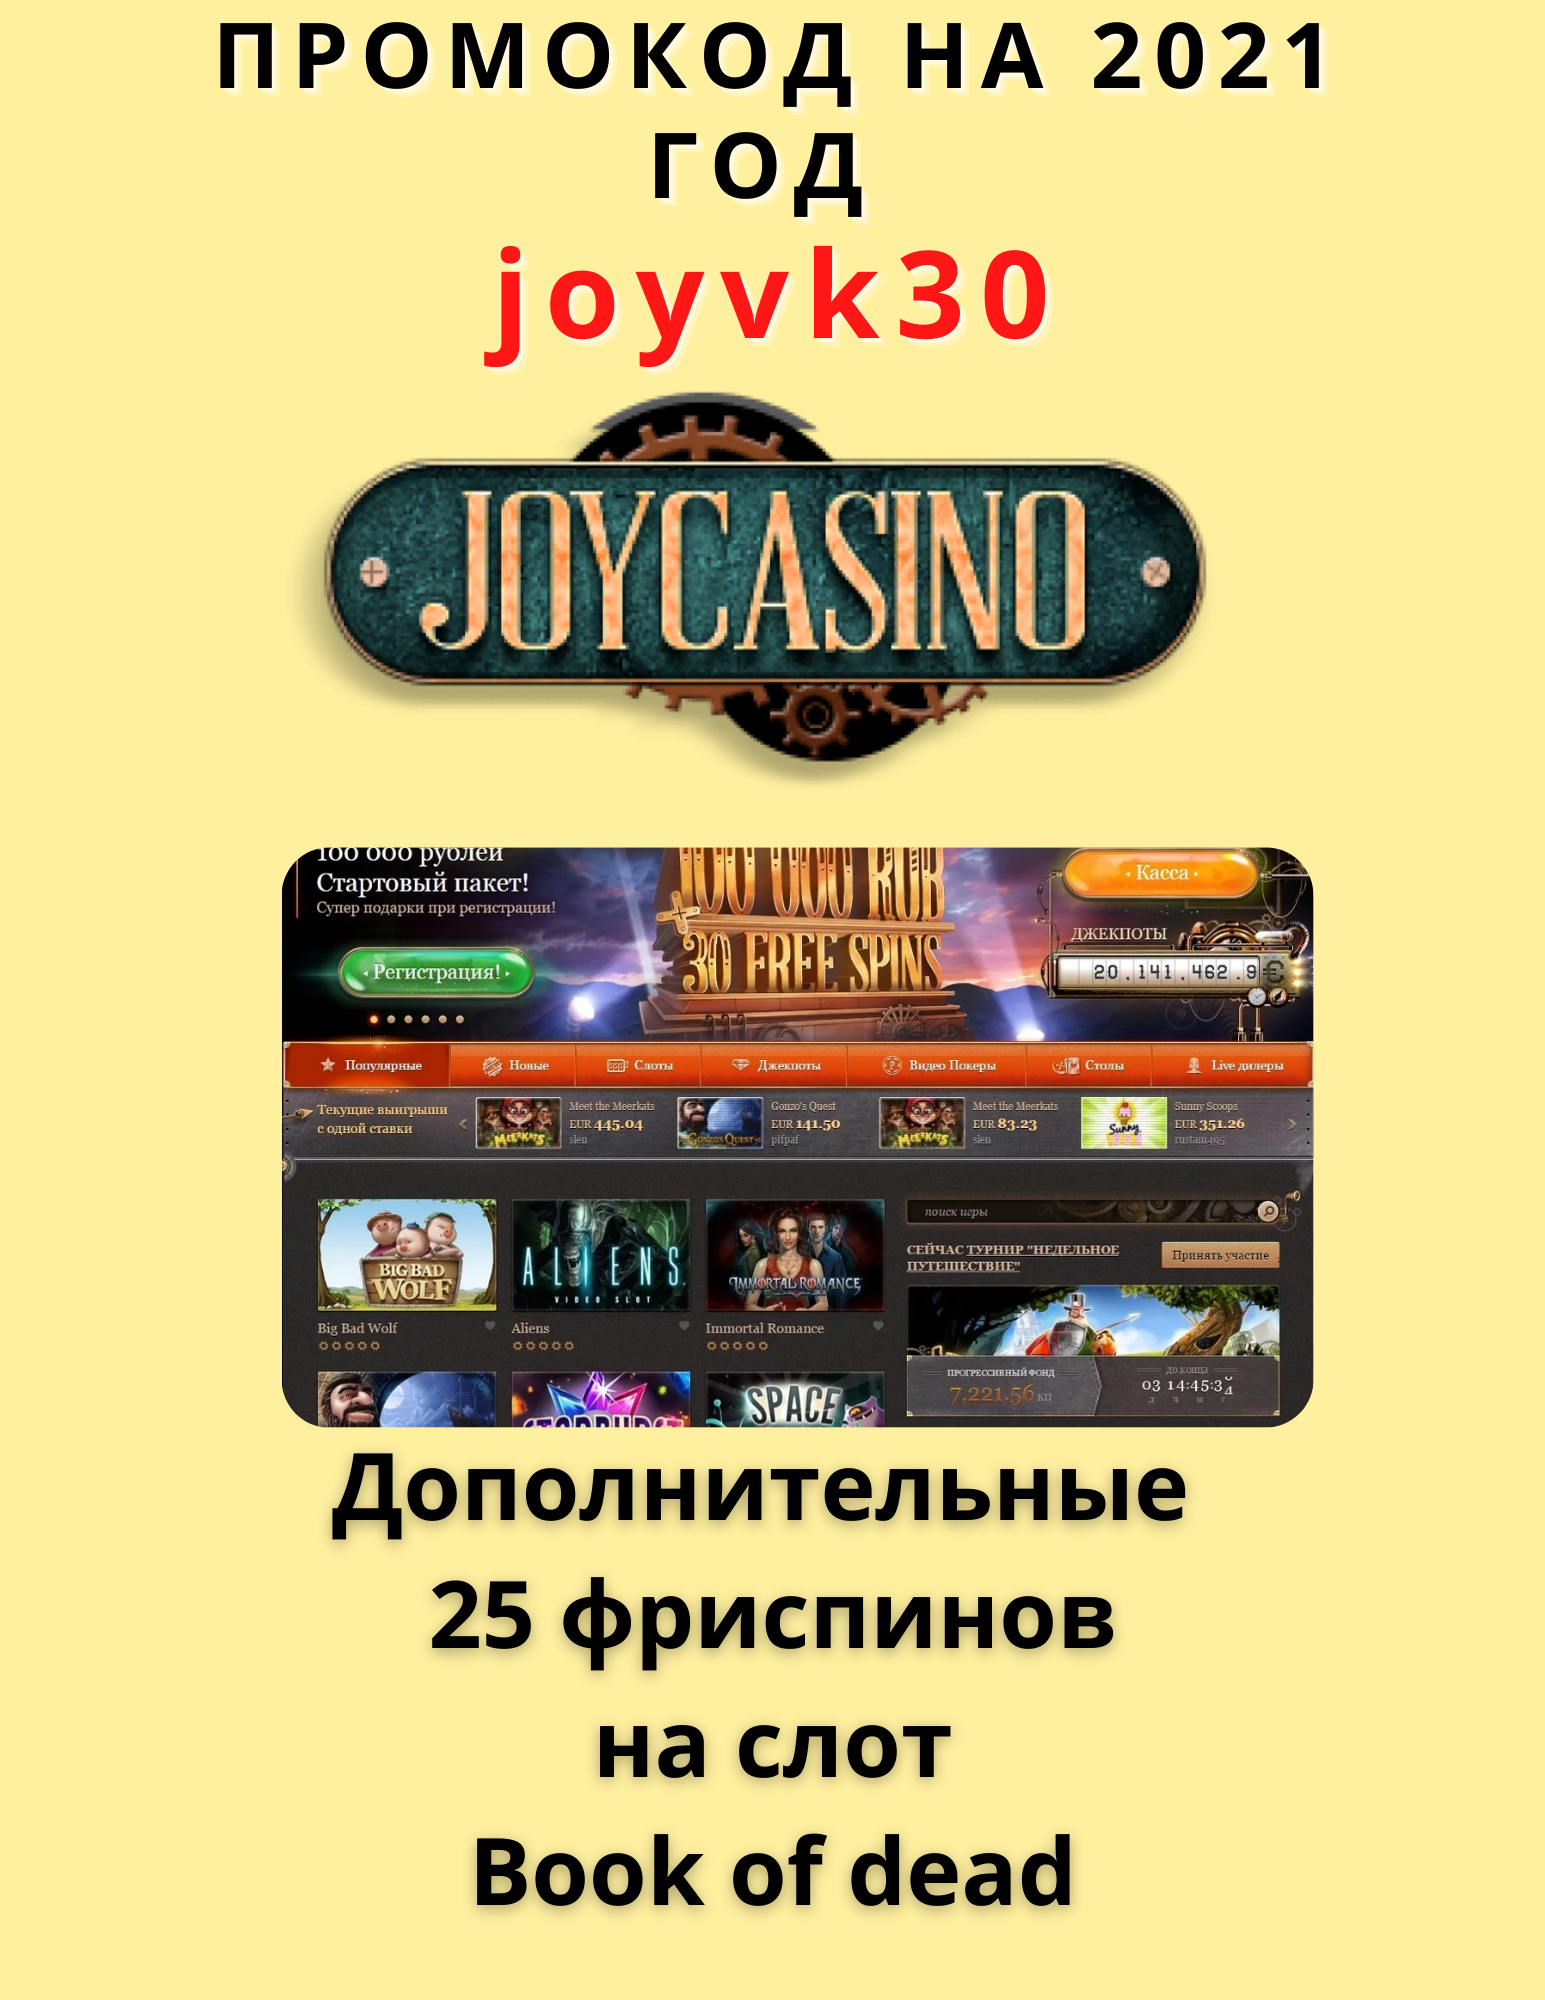 Бездепозитный бонус в казино. Joycasino бездепозитный бонус. Промо код Joycasino. Джой казино бездепозитный бонус.